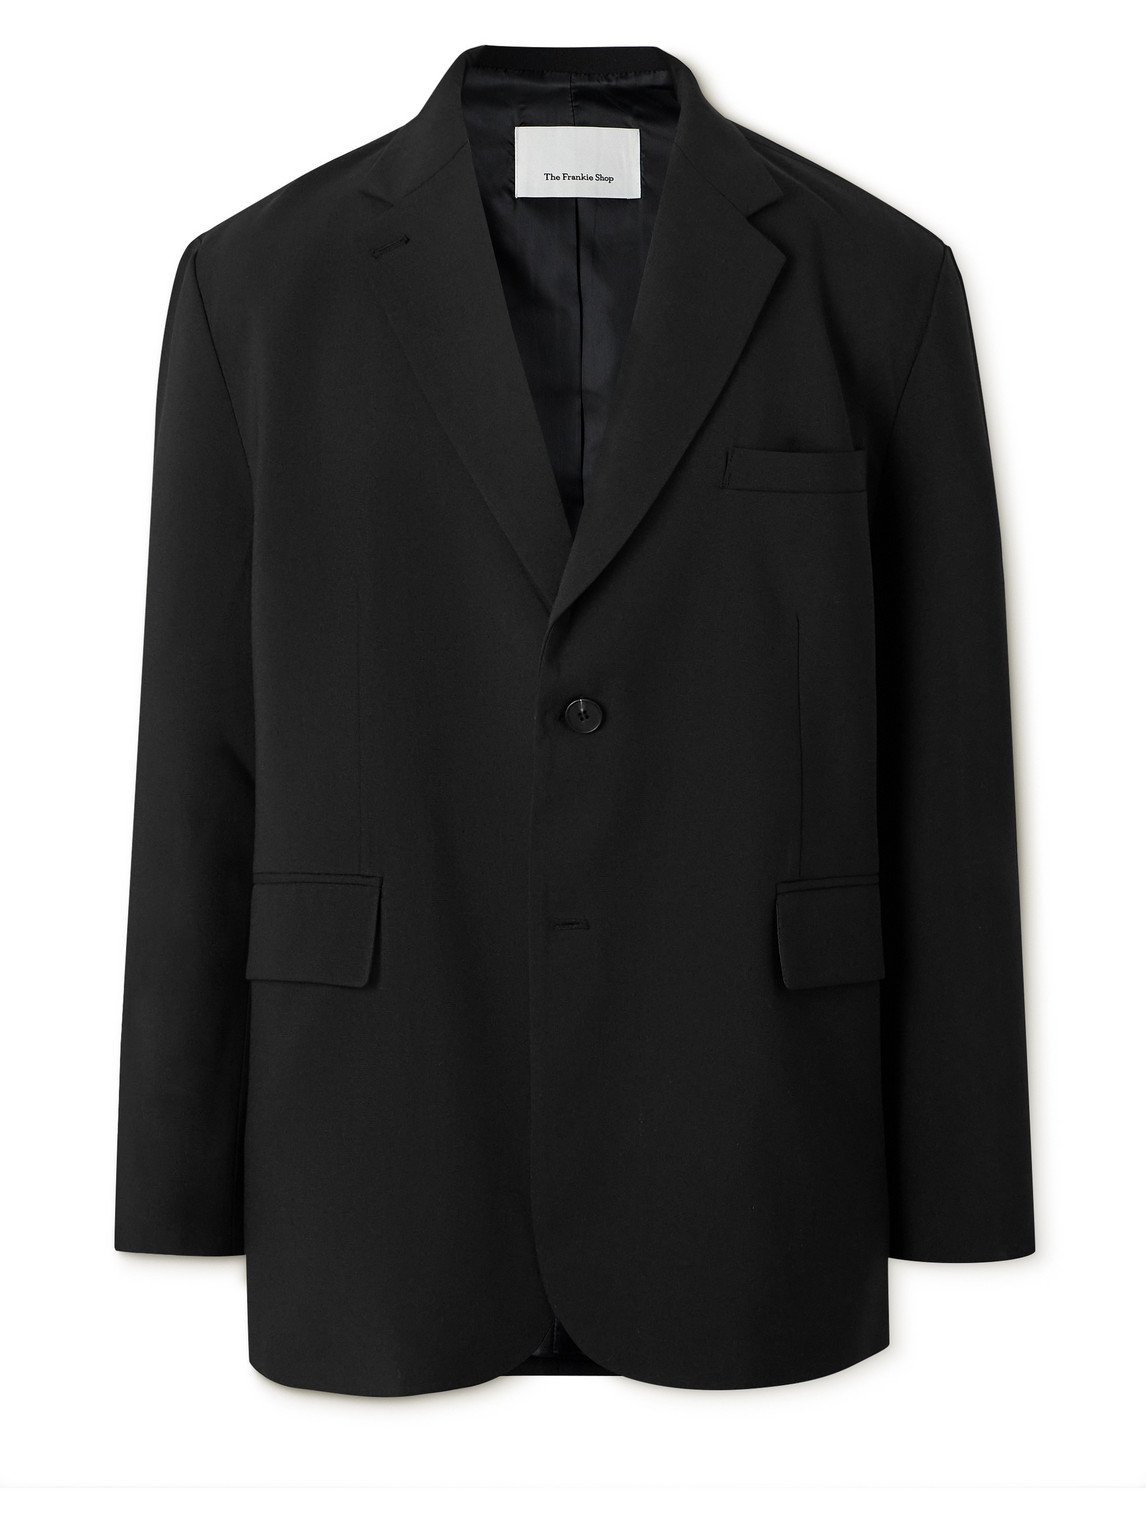 The Frankie Shop - Beo Oversized Woven Suit Jacket - Men - Black - XL von The Frankie Shop